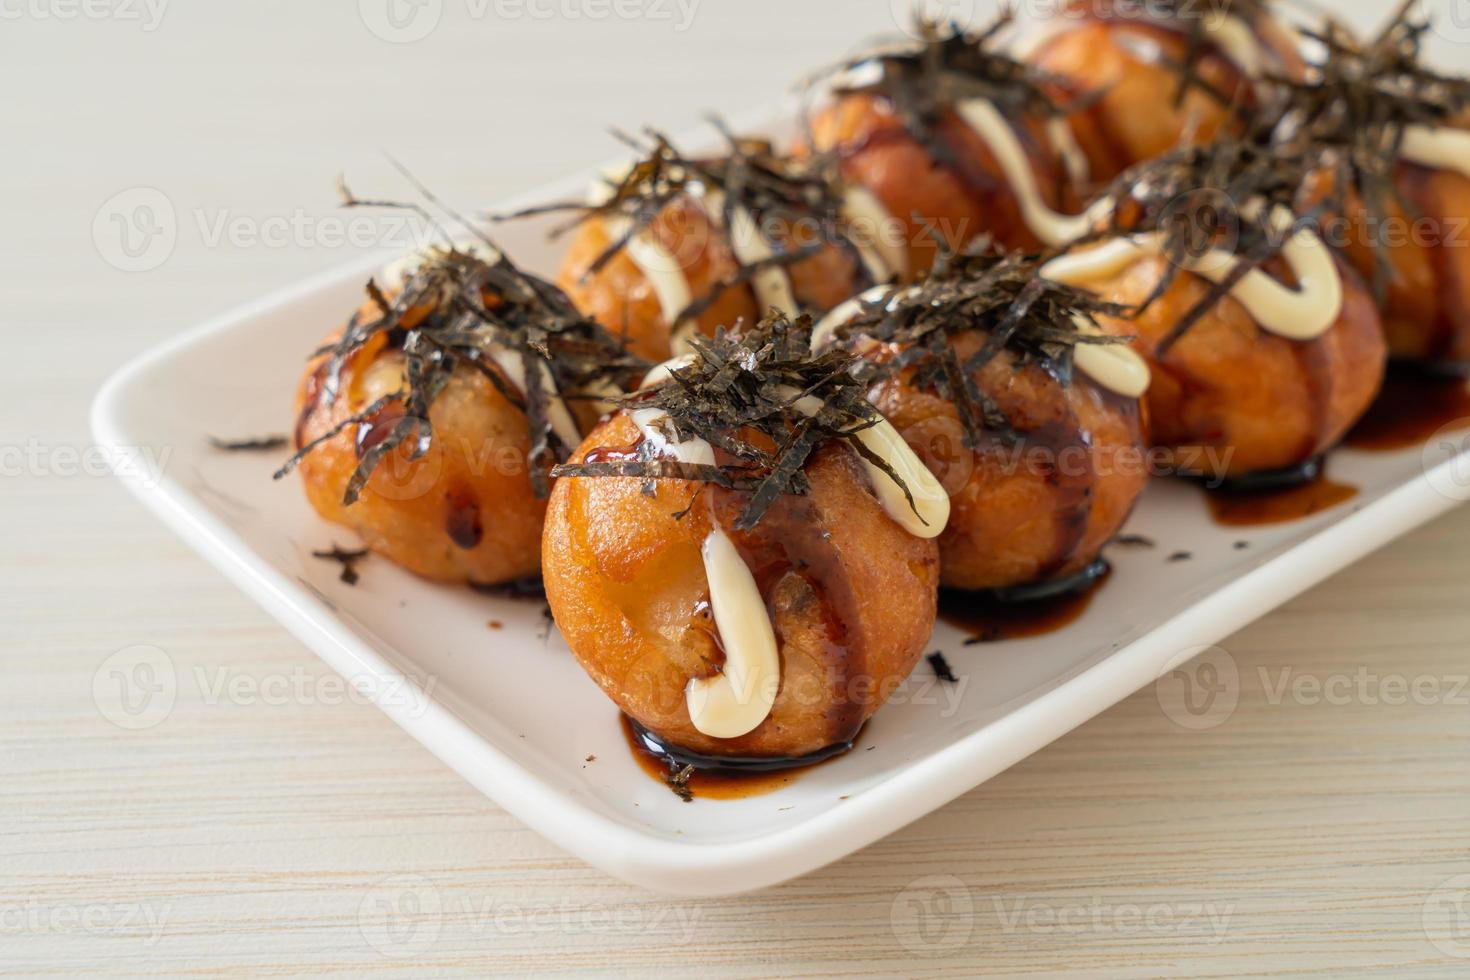 boulettes de takoyaki ou boulettes de poulpe photo